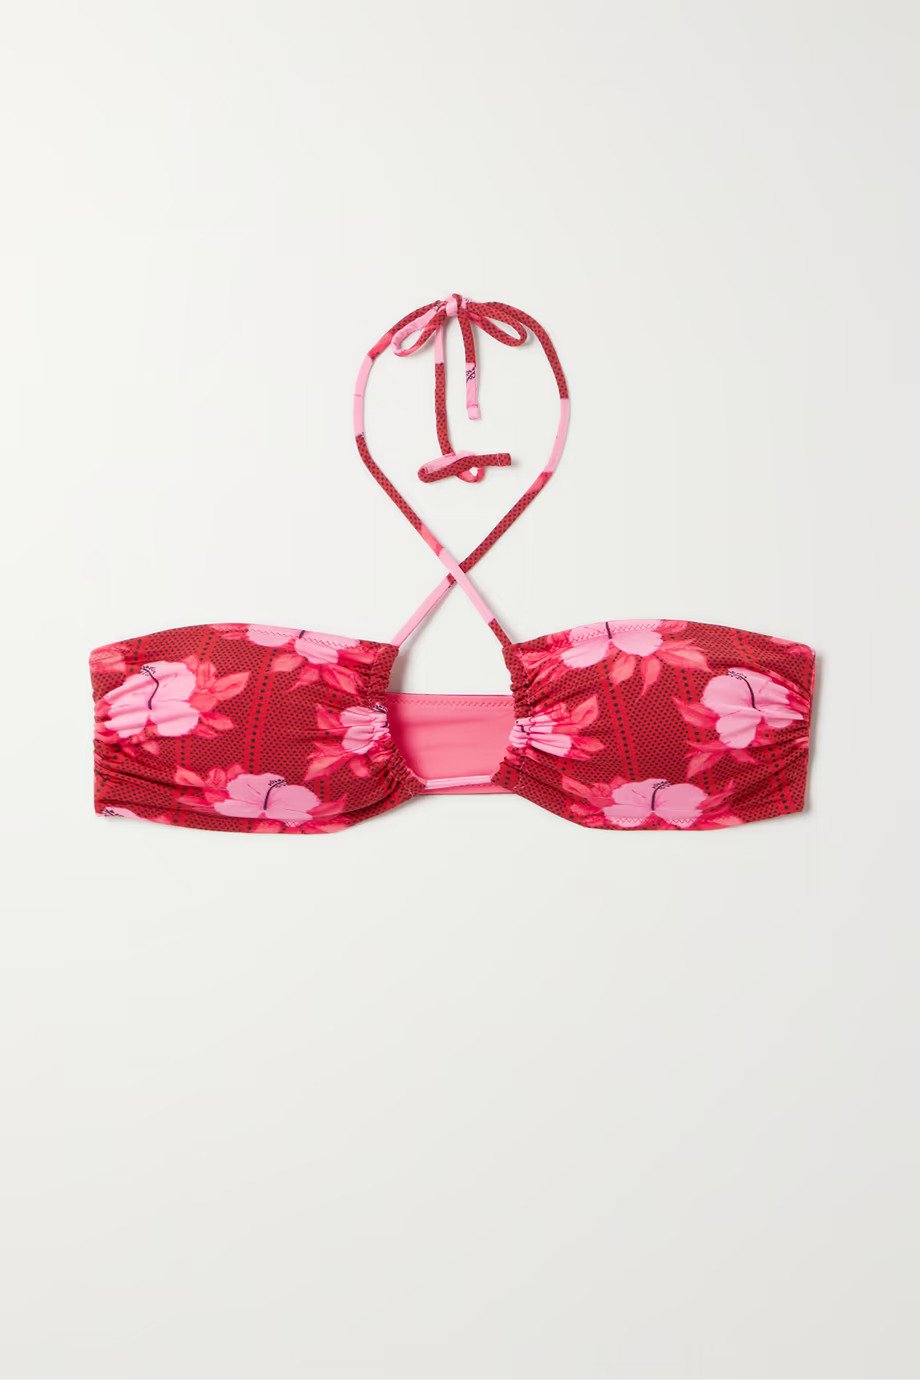 Fisch + Pinel Ruched Floral-Print Stretch-ECONYL Halterneck Bikini Top